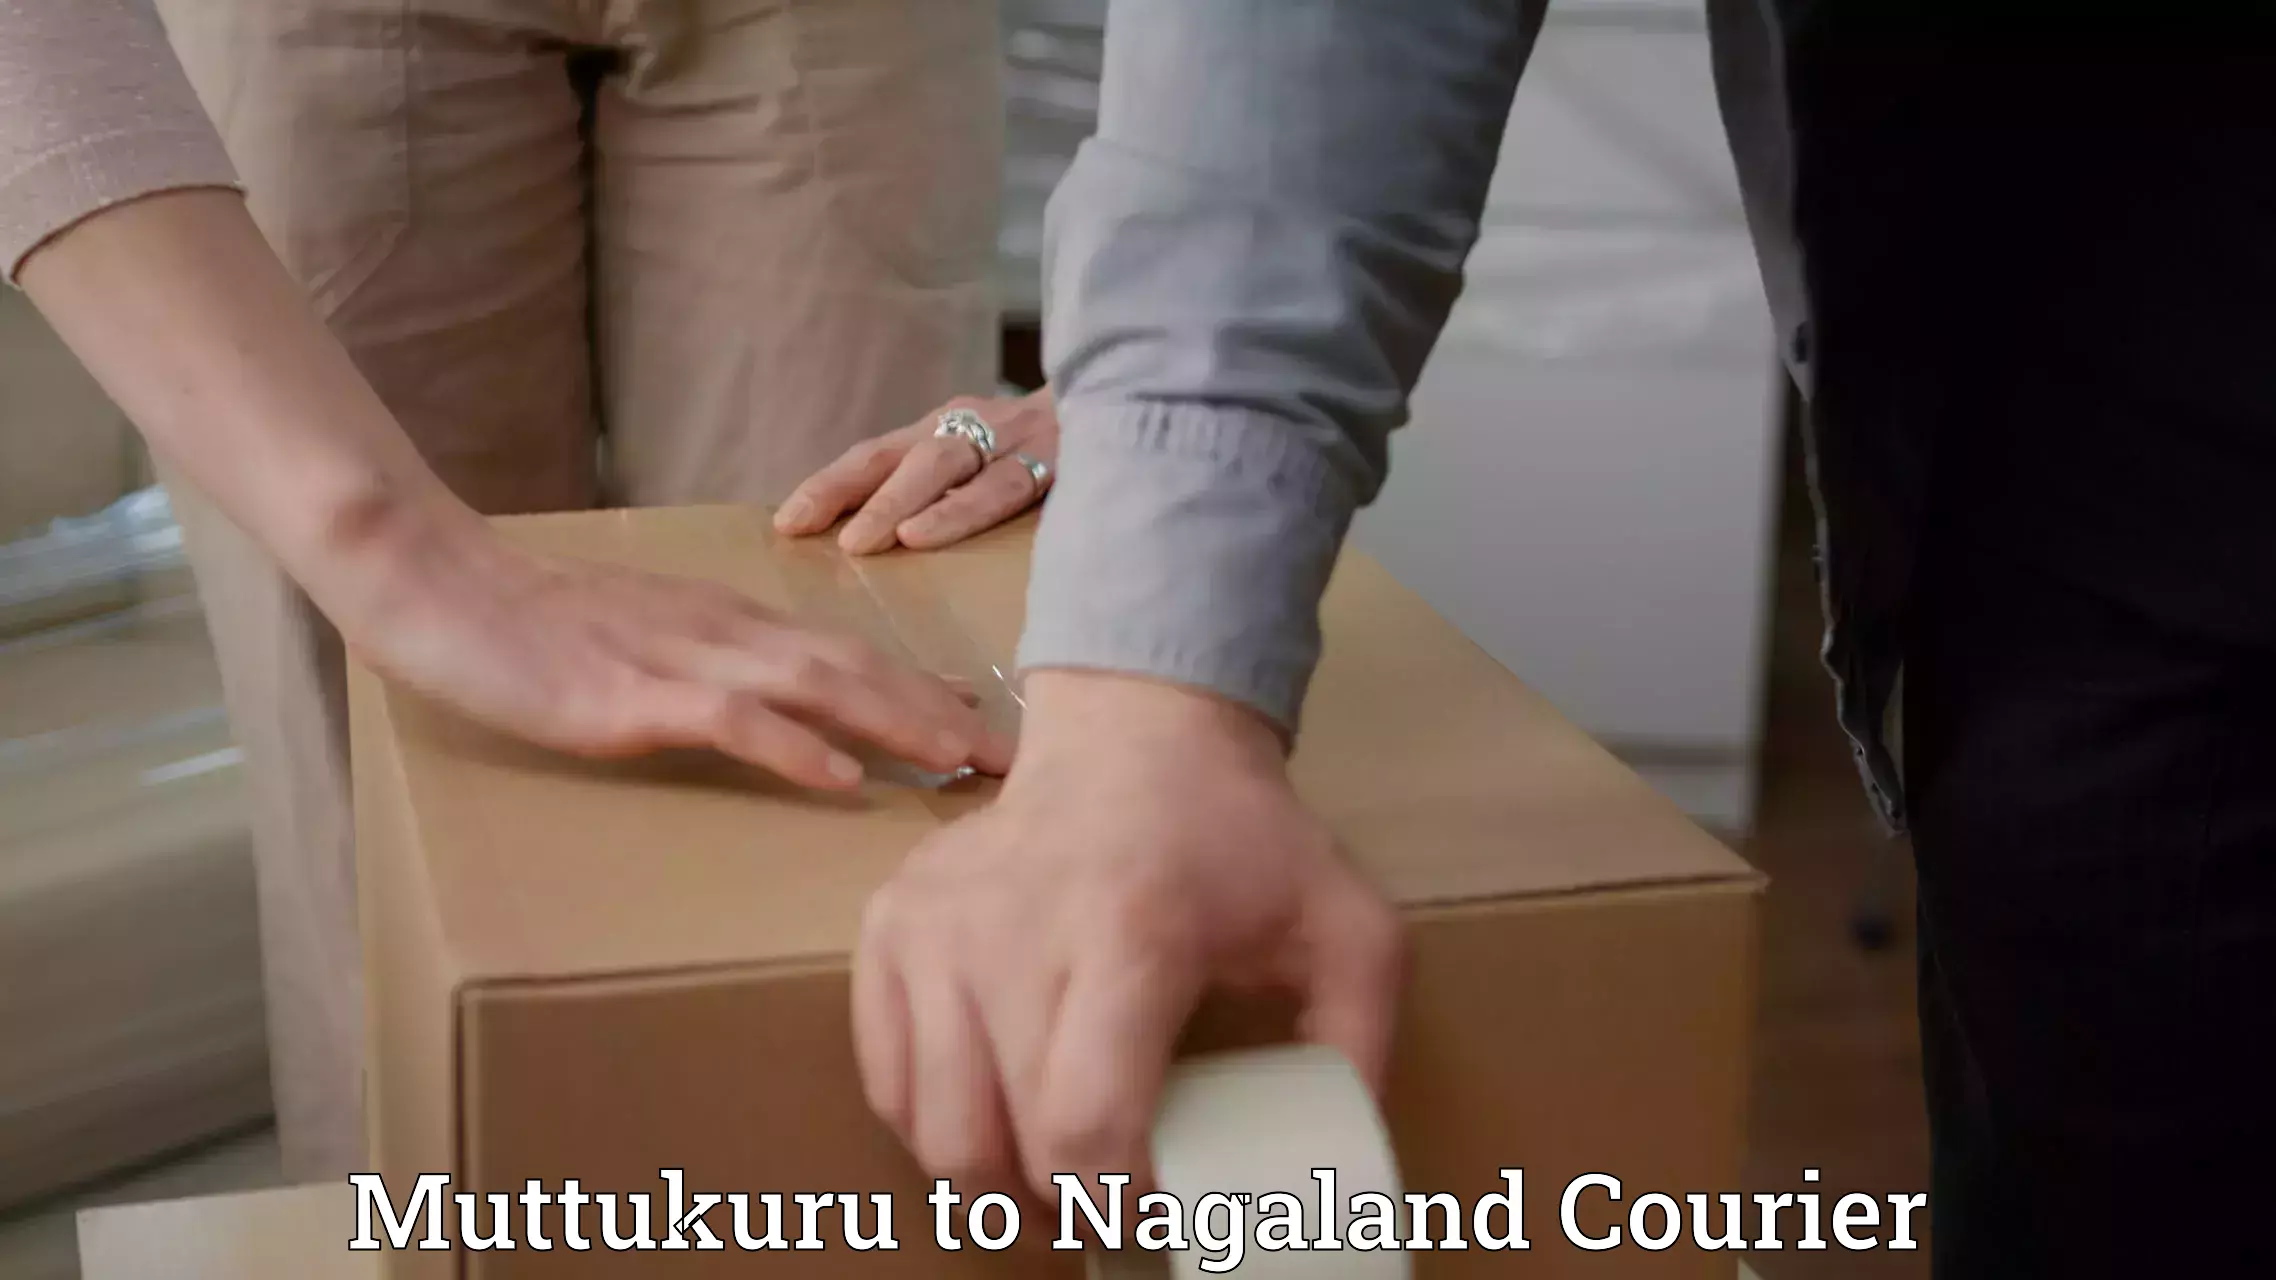 Professional courier handling Muttukuru to Longleng